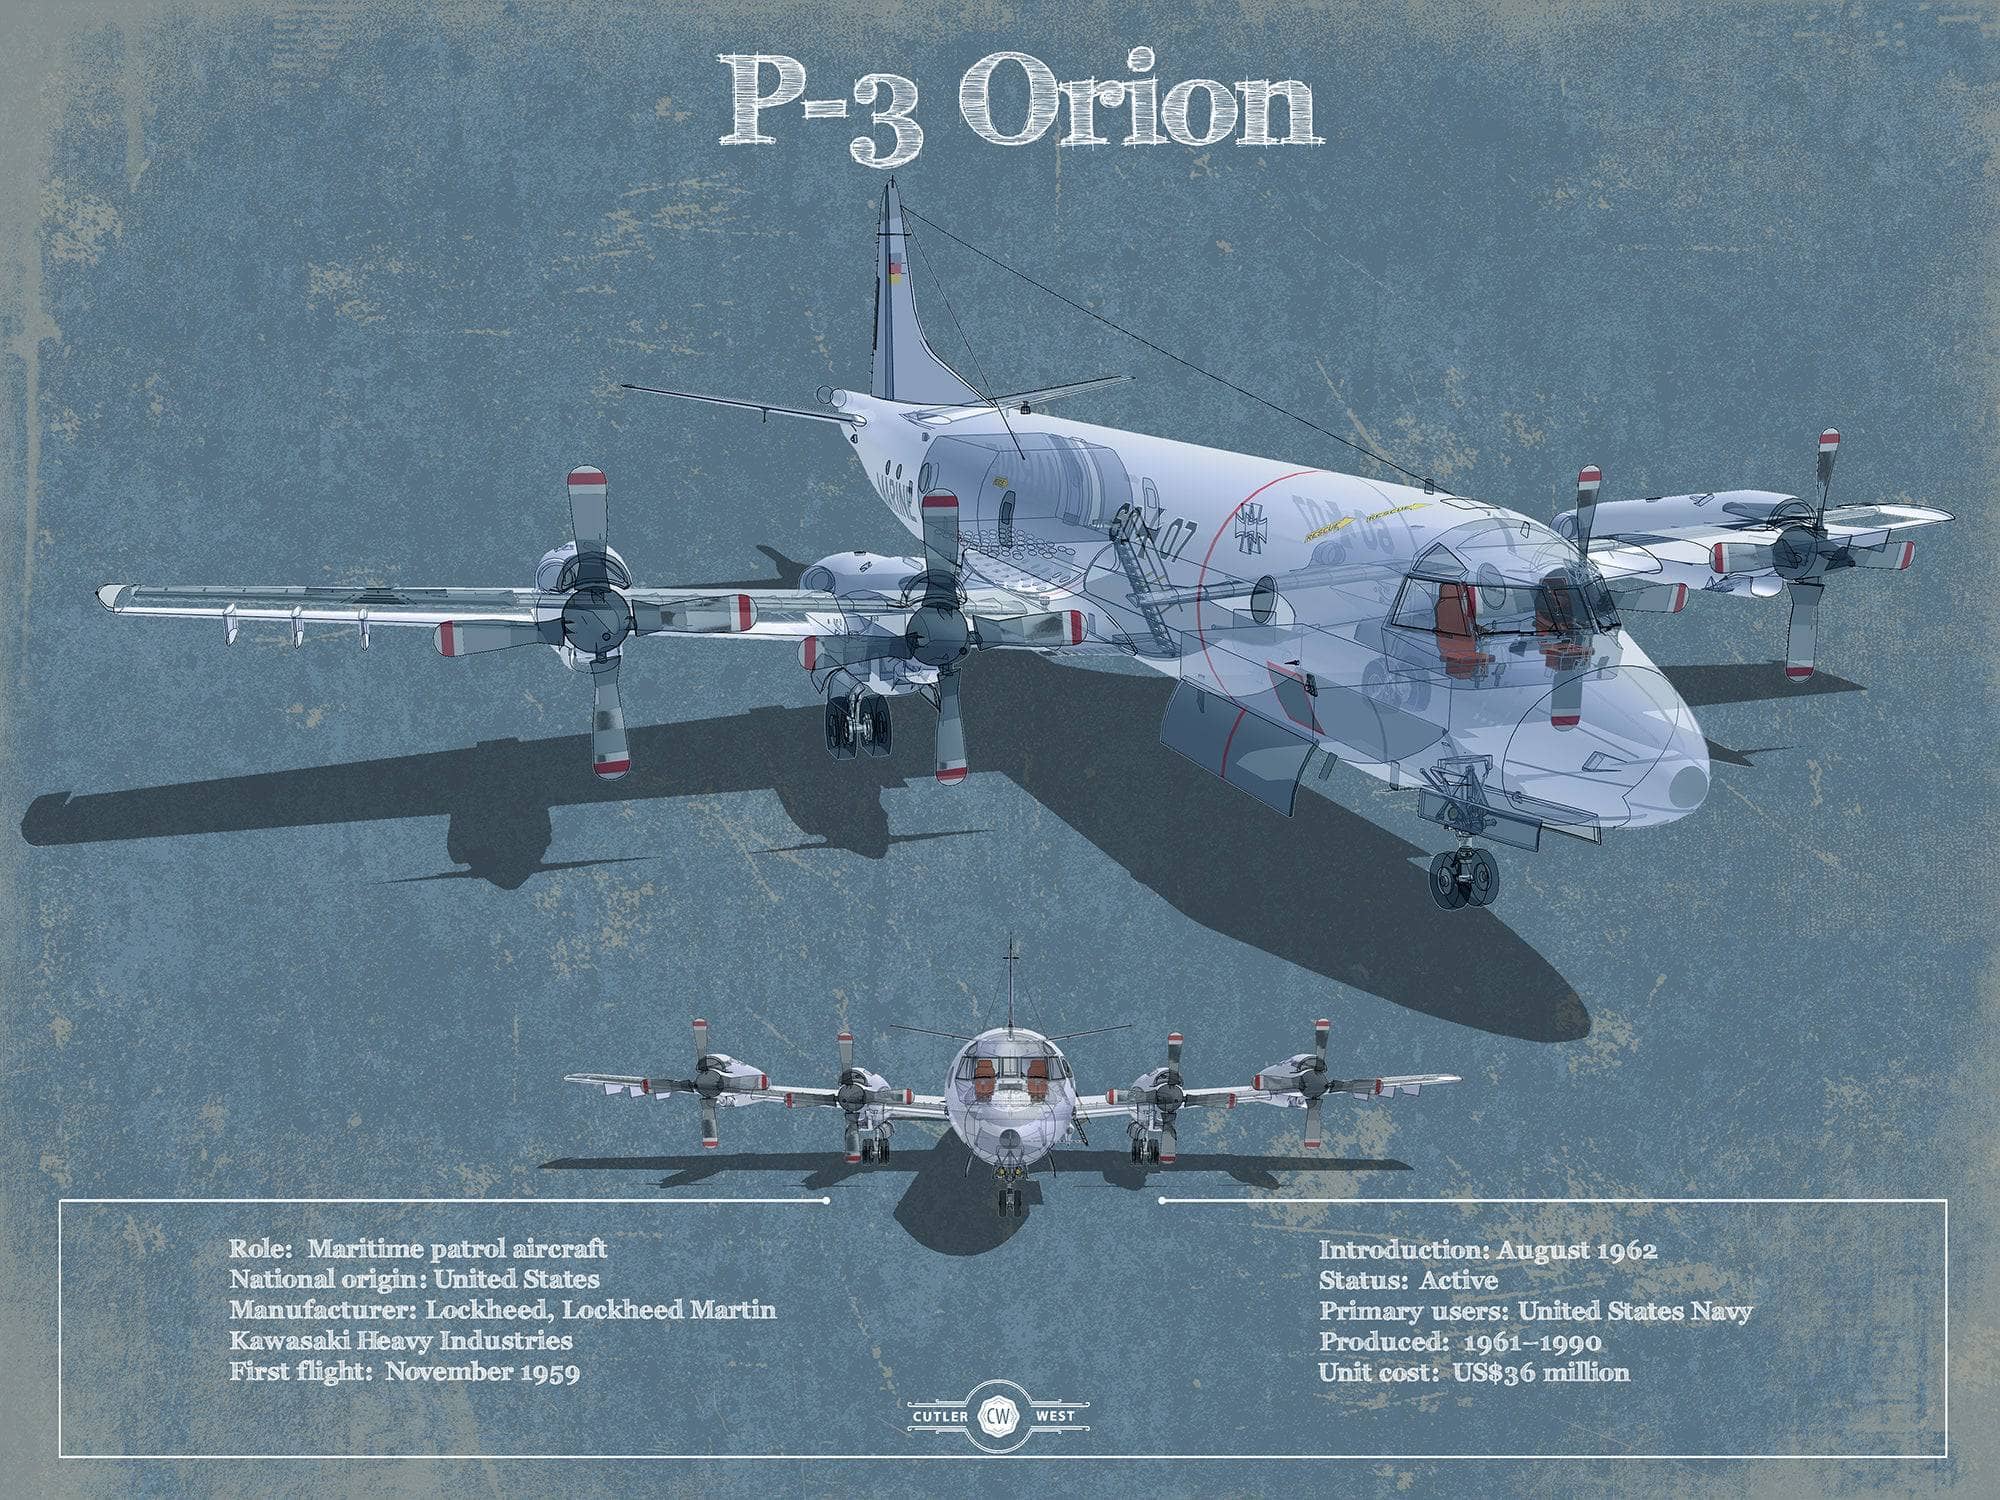 Cutler West Military Aircraft 14" x 11" / Unframed P-3 Orion Aircraft Blueprint Original Military Wall Art 789546142_69635